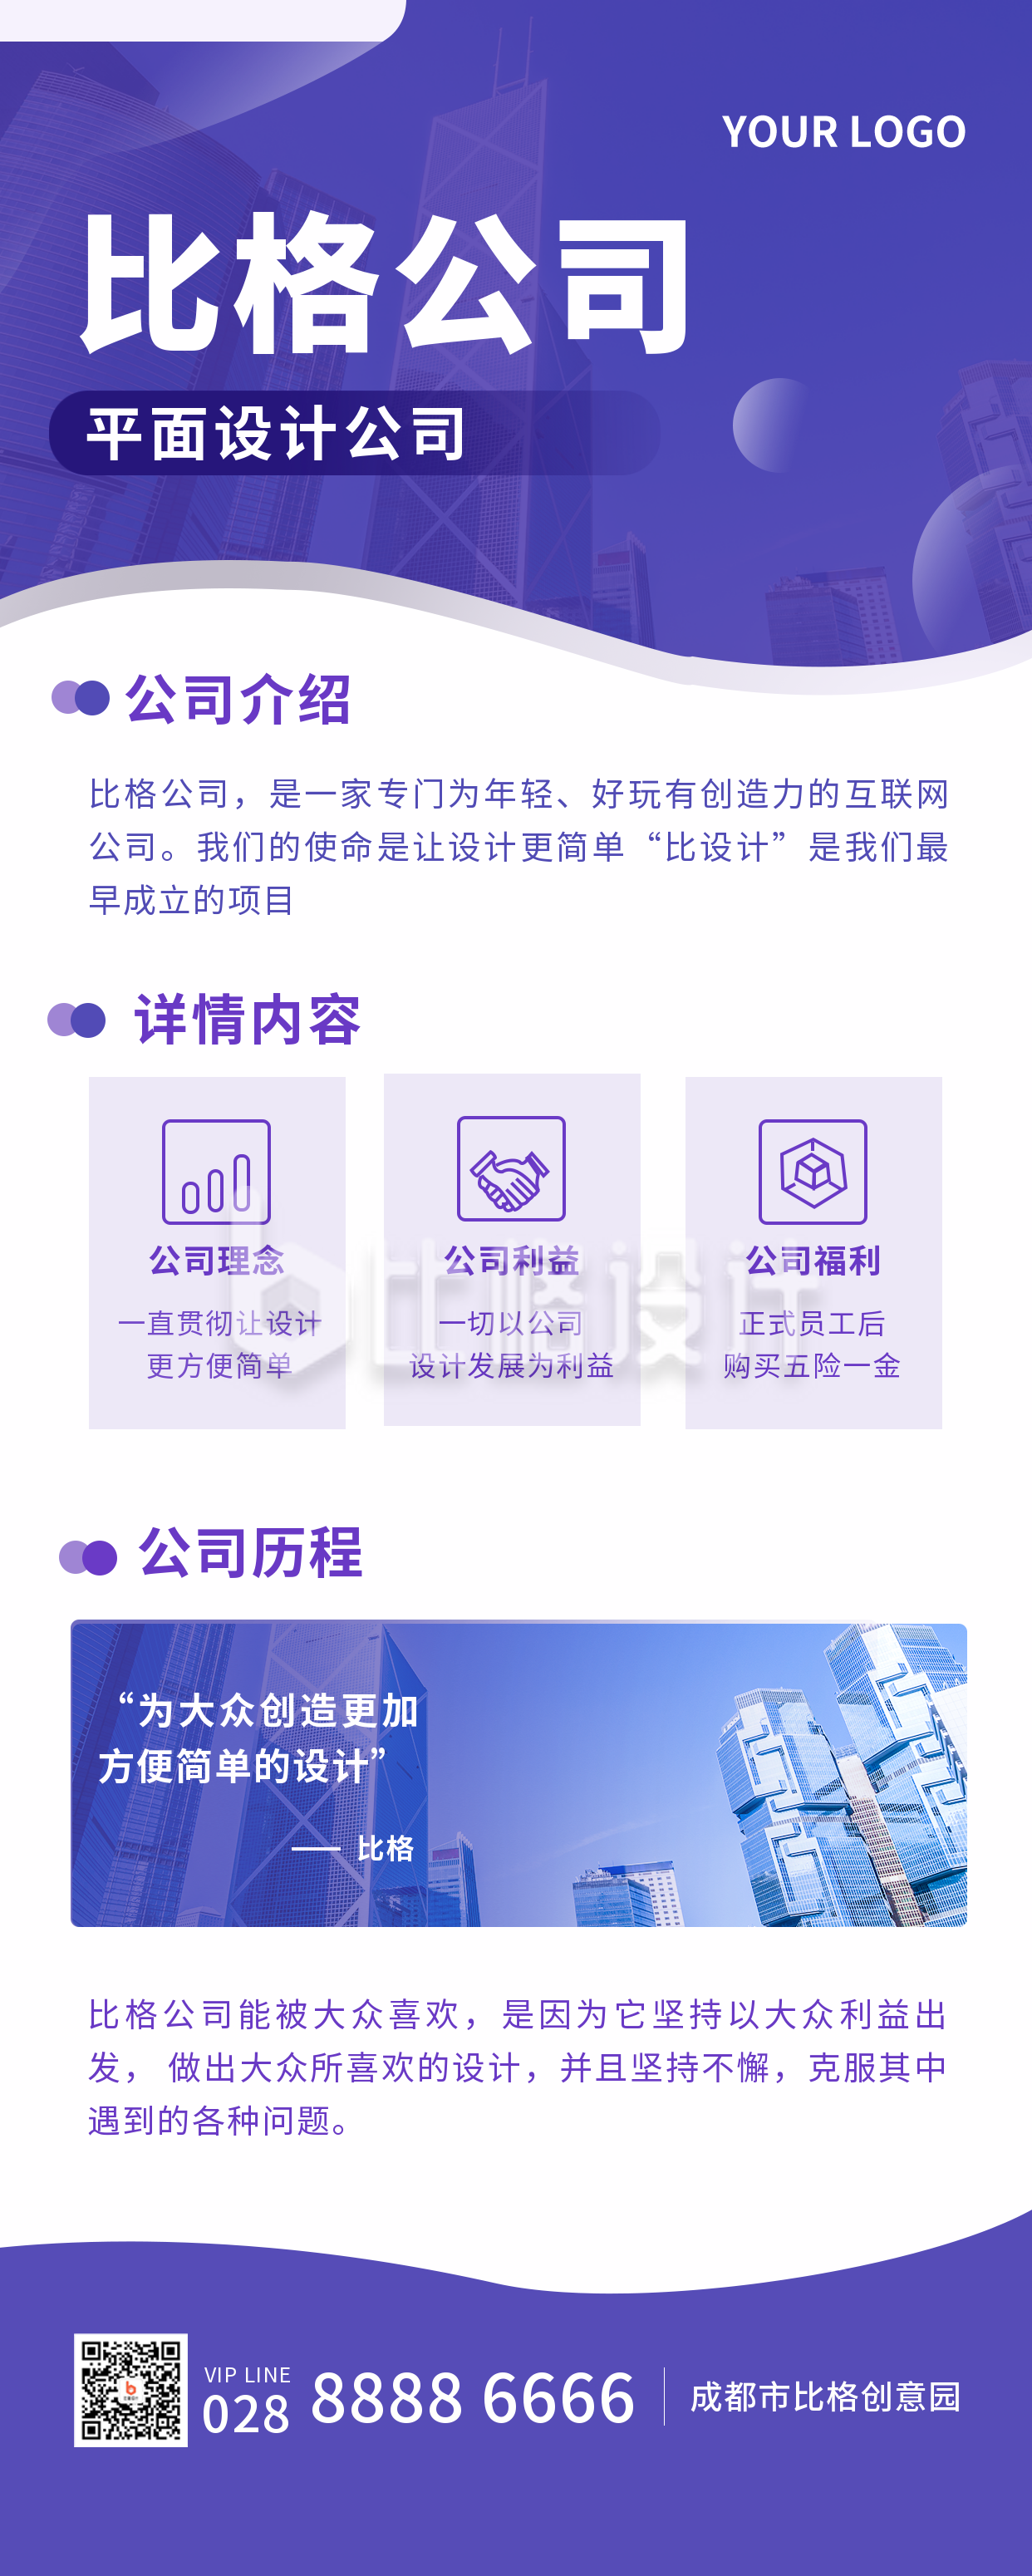 公司介绍紫色商务简约长图海报